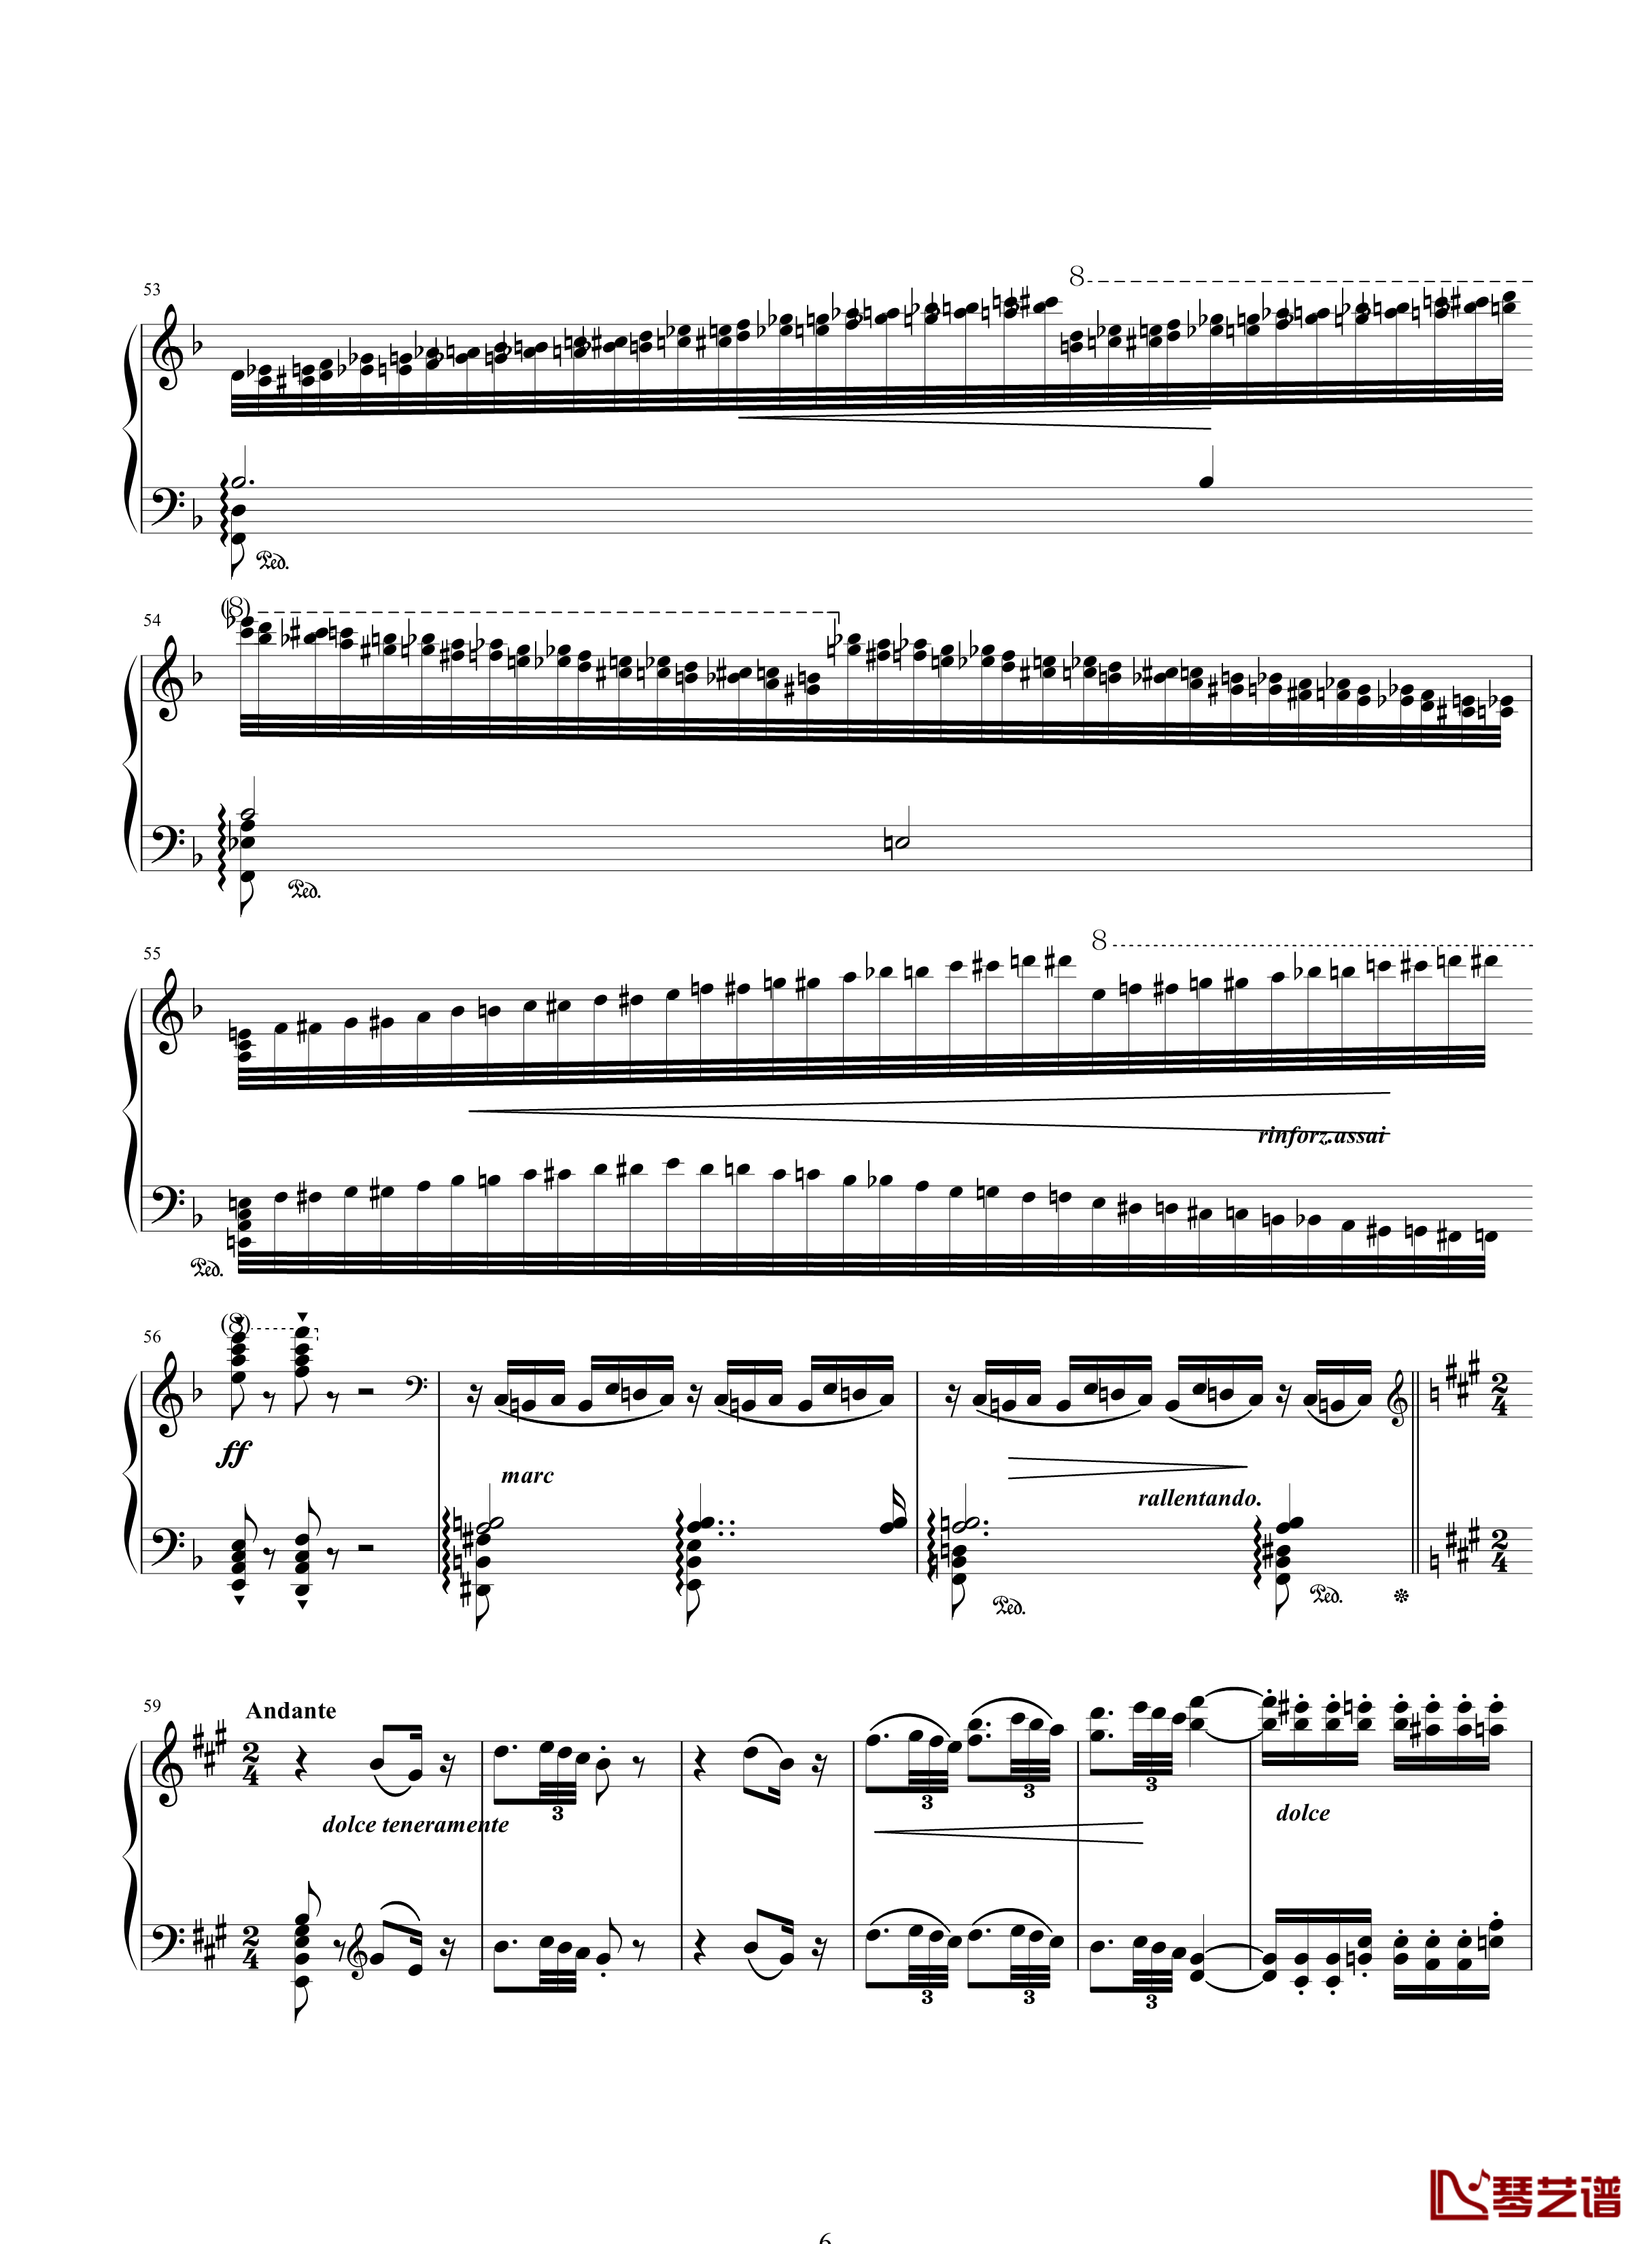 唐璜的回忆钢琴谱-34页全谱-李斯特6